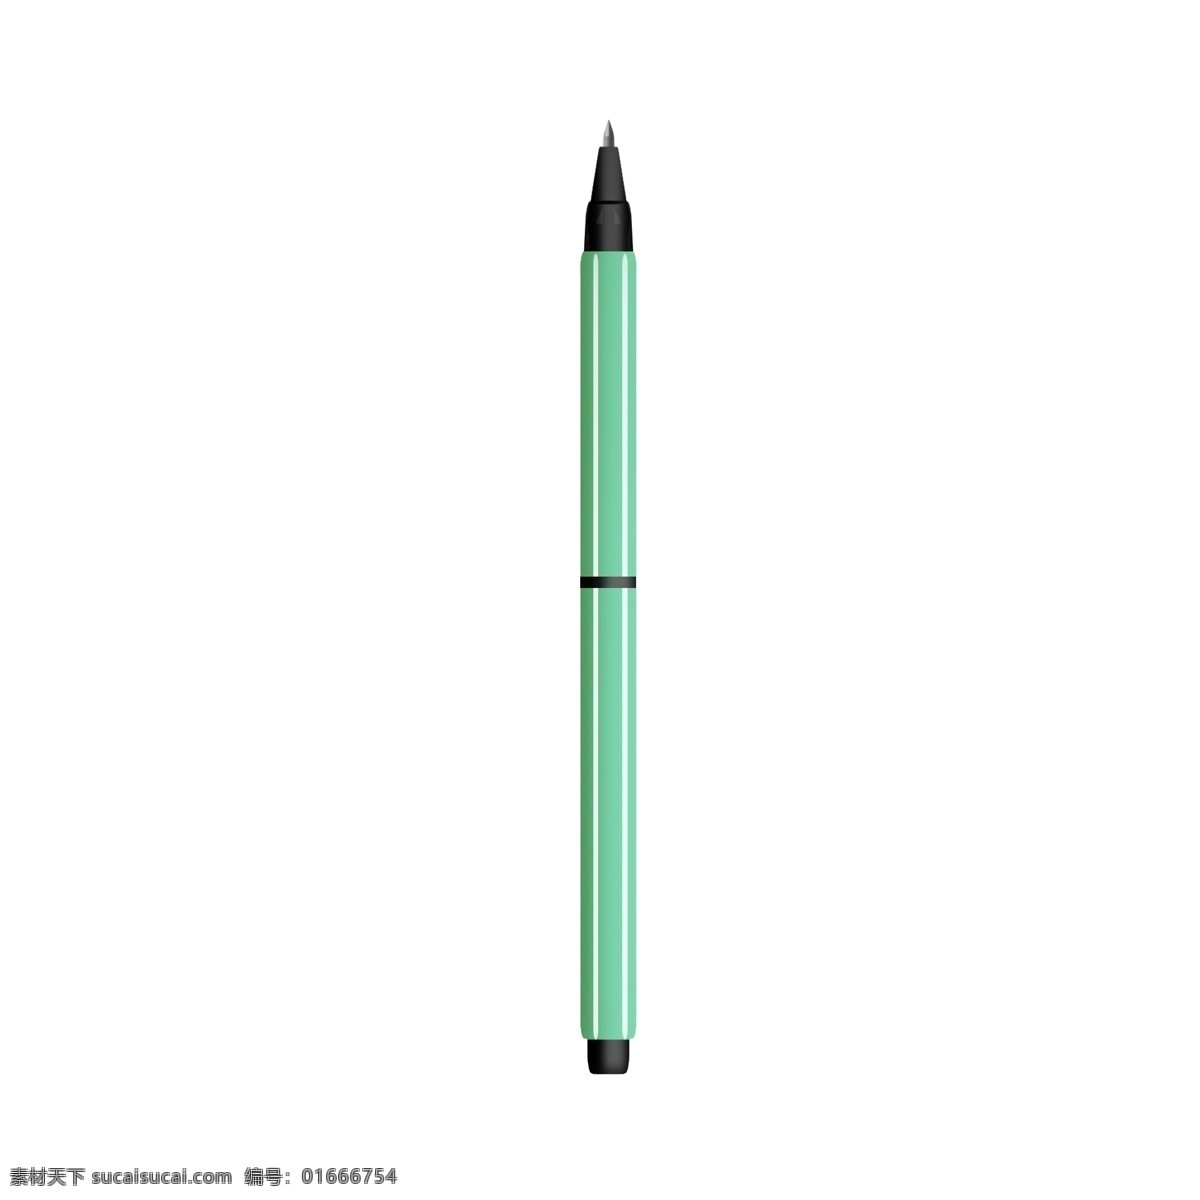 一根 果绿色 黑头 笔 学习用品 绿色的笔杆 黑色的笔头 办公用品 可爱的 签字立体笔 文具用品